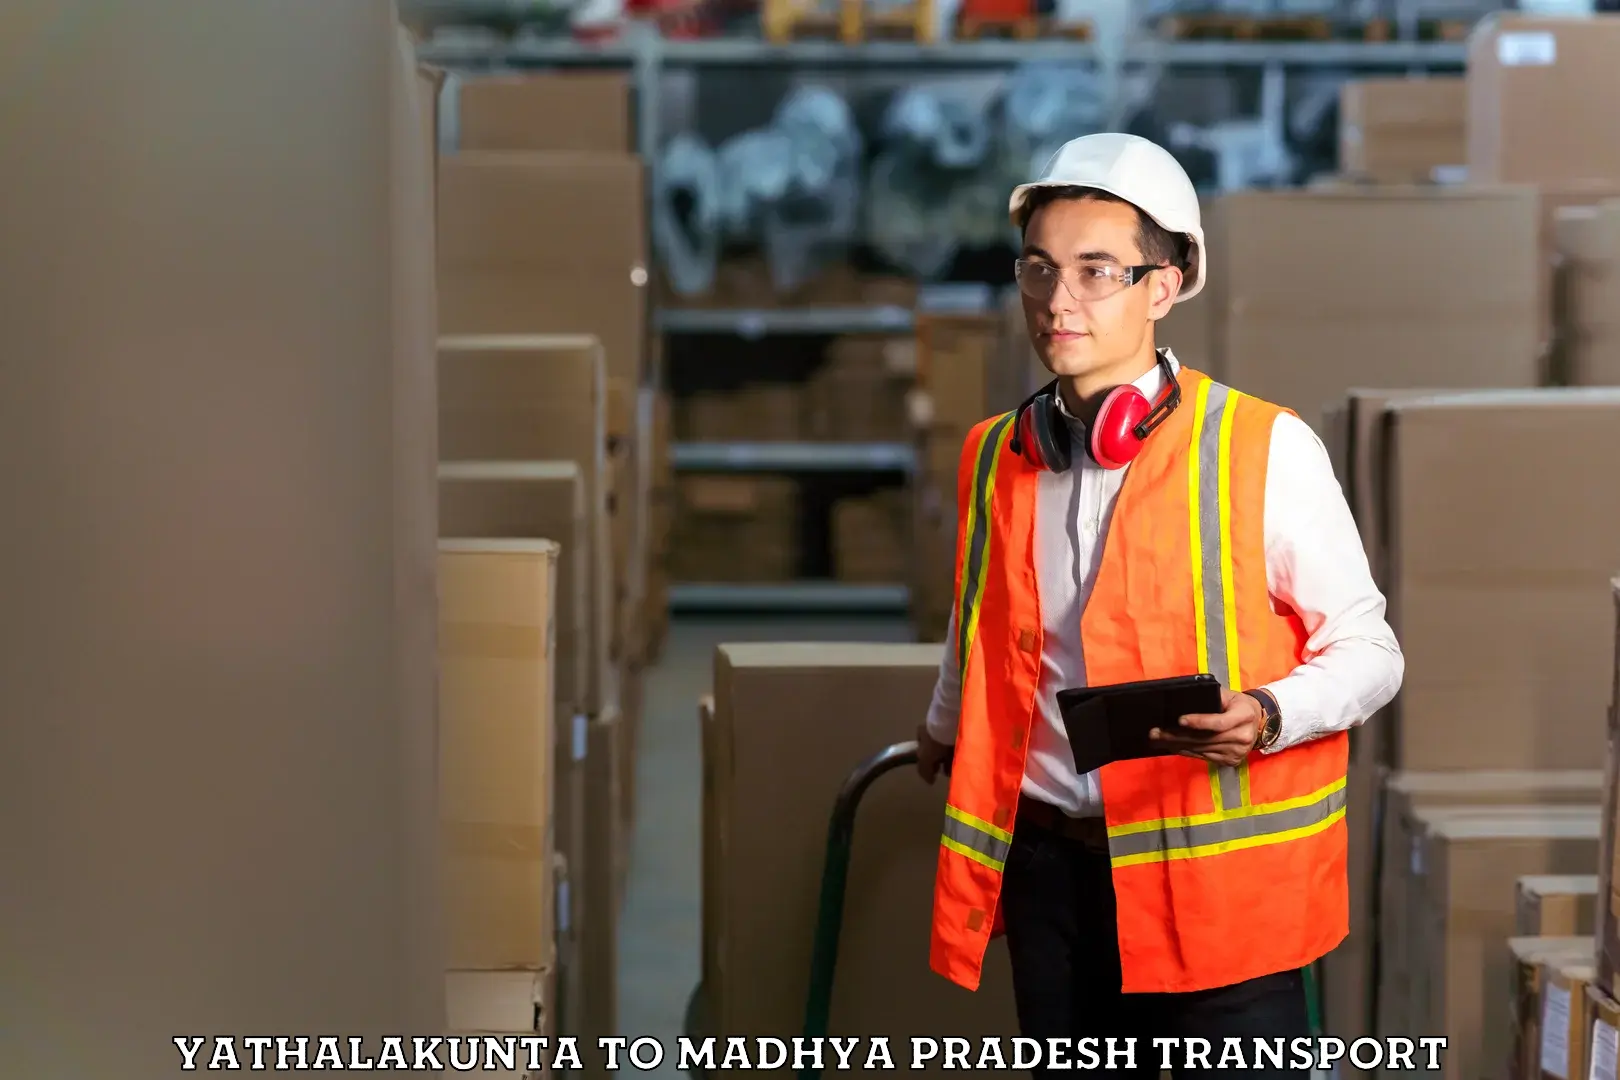 Material transport services Yathalakunta to Nagda